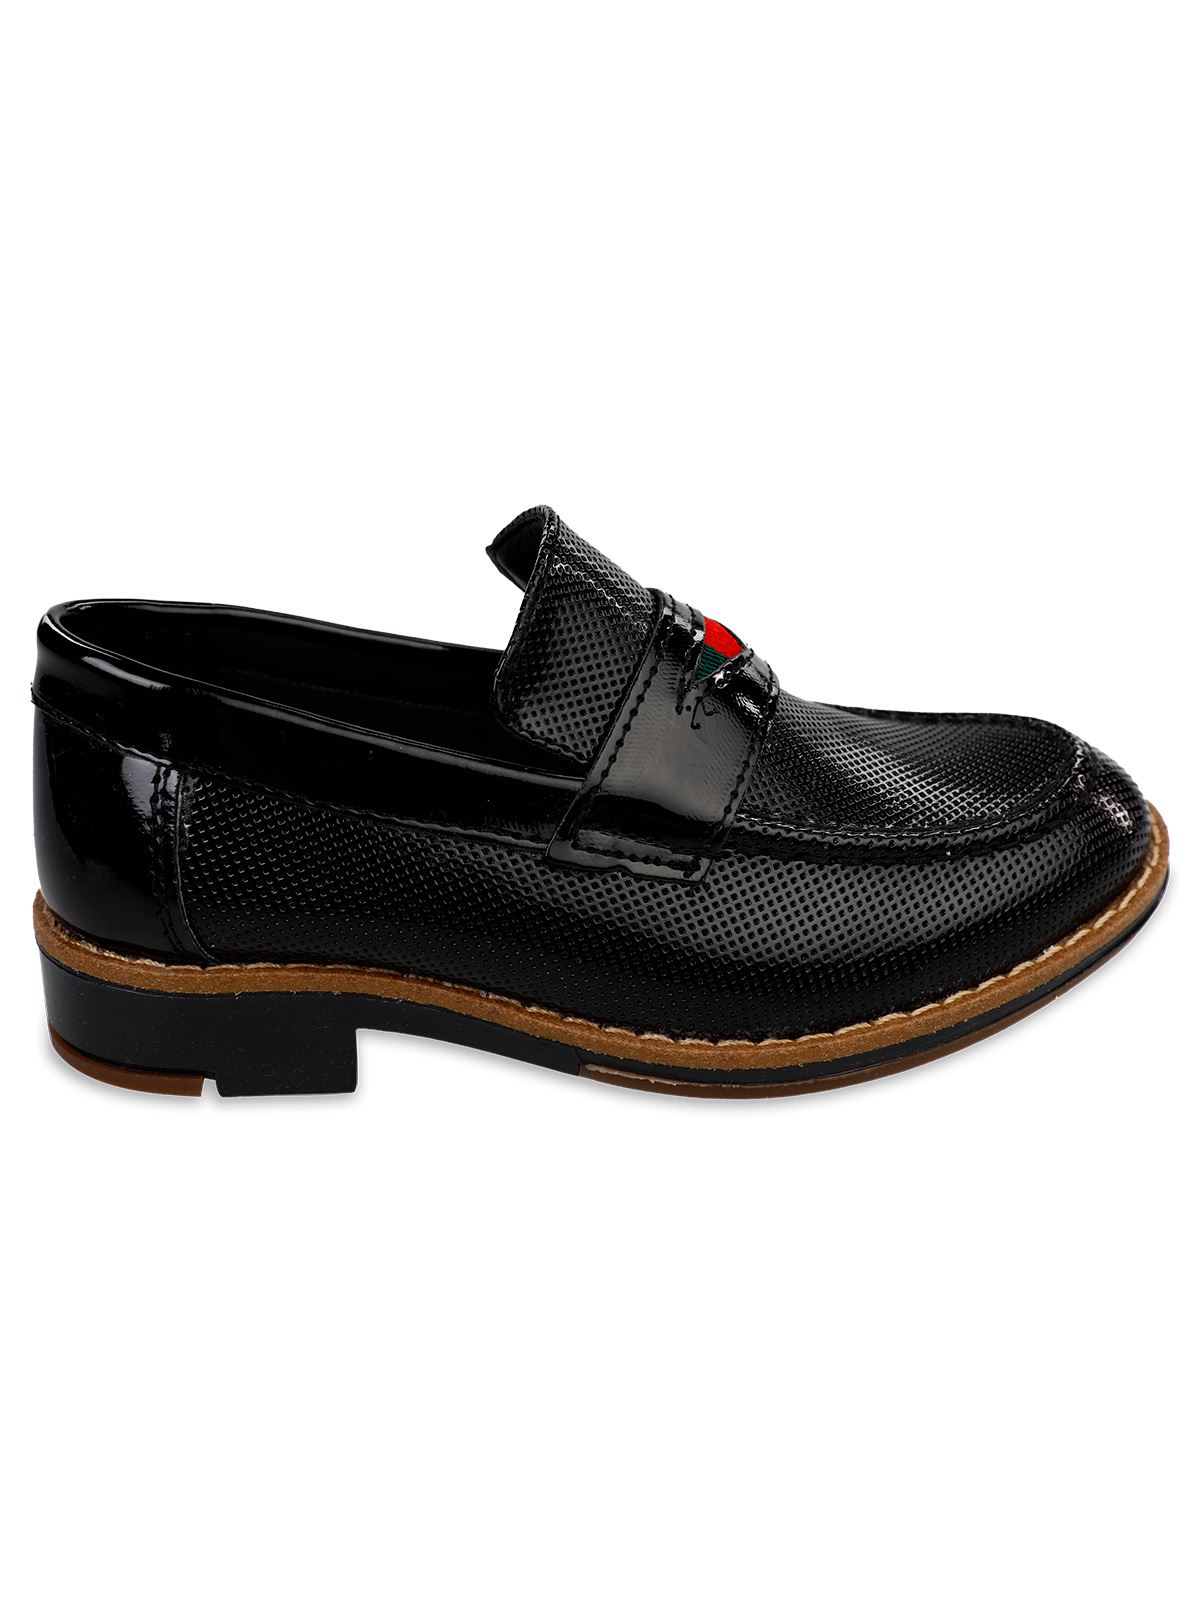 Harli Erkek Çocuk Klasik Ayakkabı 31-35 Numara Siyah